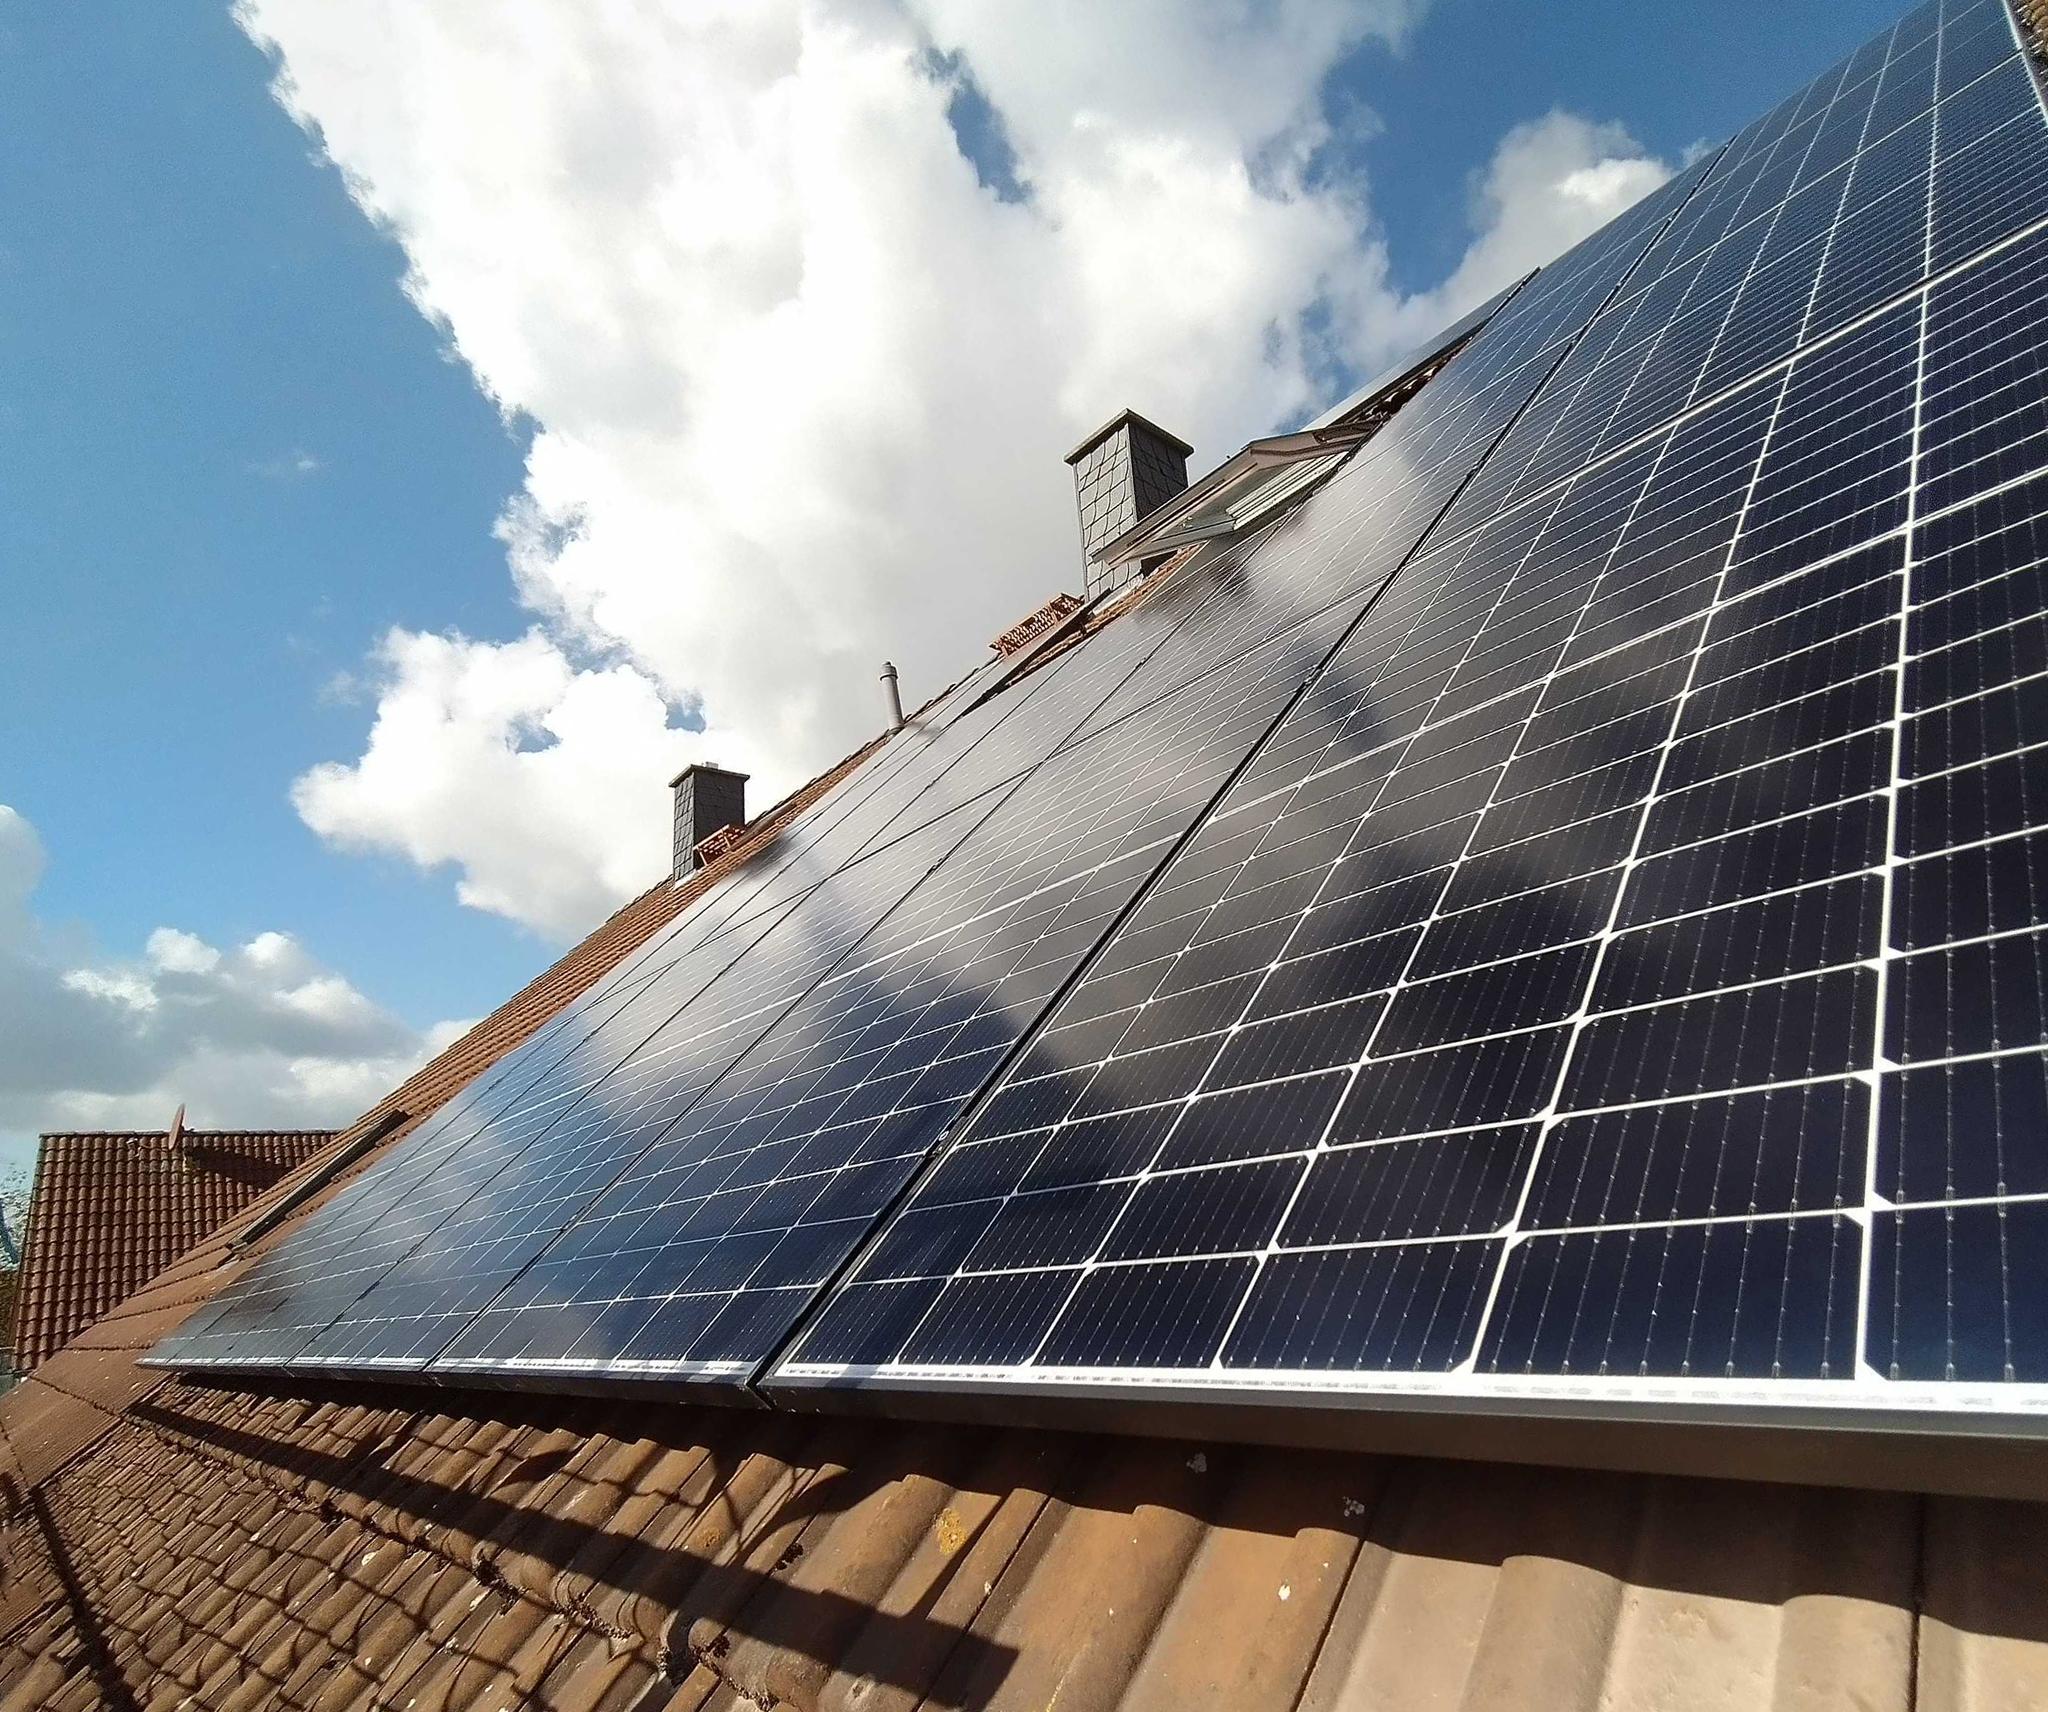 Solarmodule auf einem Dach - Photovoltaik-Förderung in Bayer mit zolar